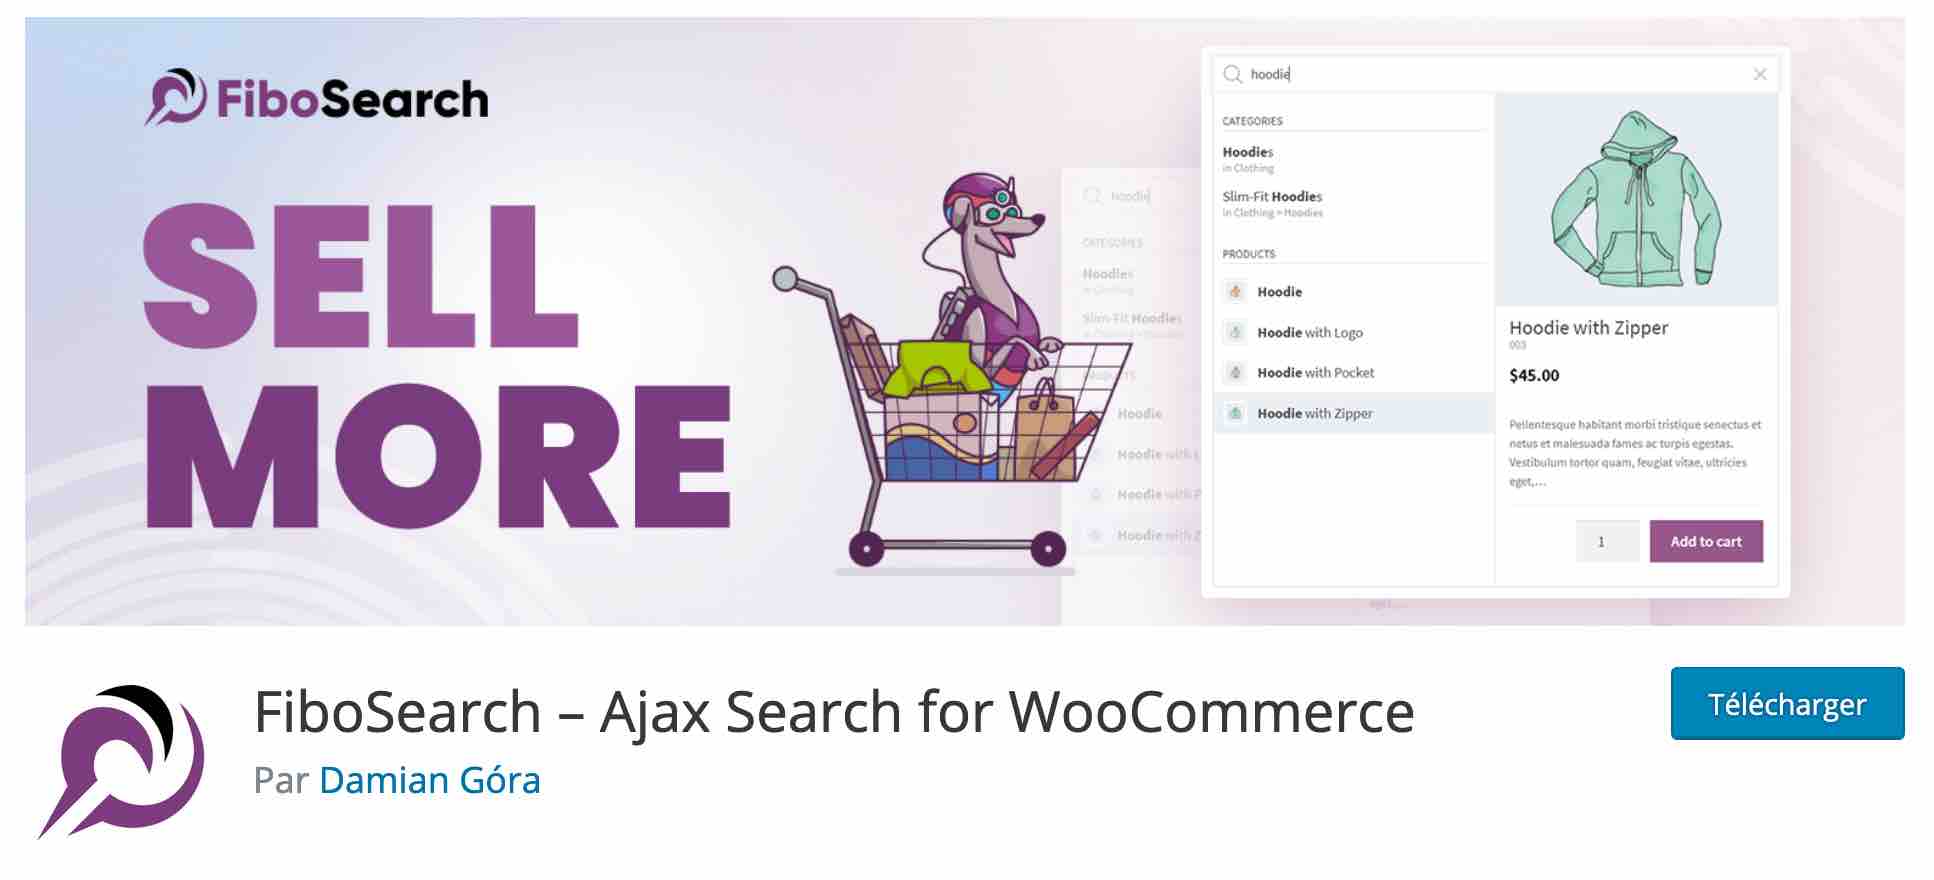 L'extension FiboSearch permet d'activer une recherche personnalisée sur WooCommerce.